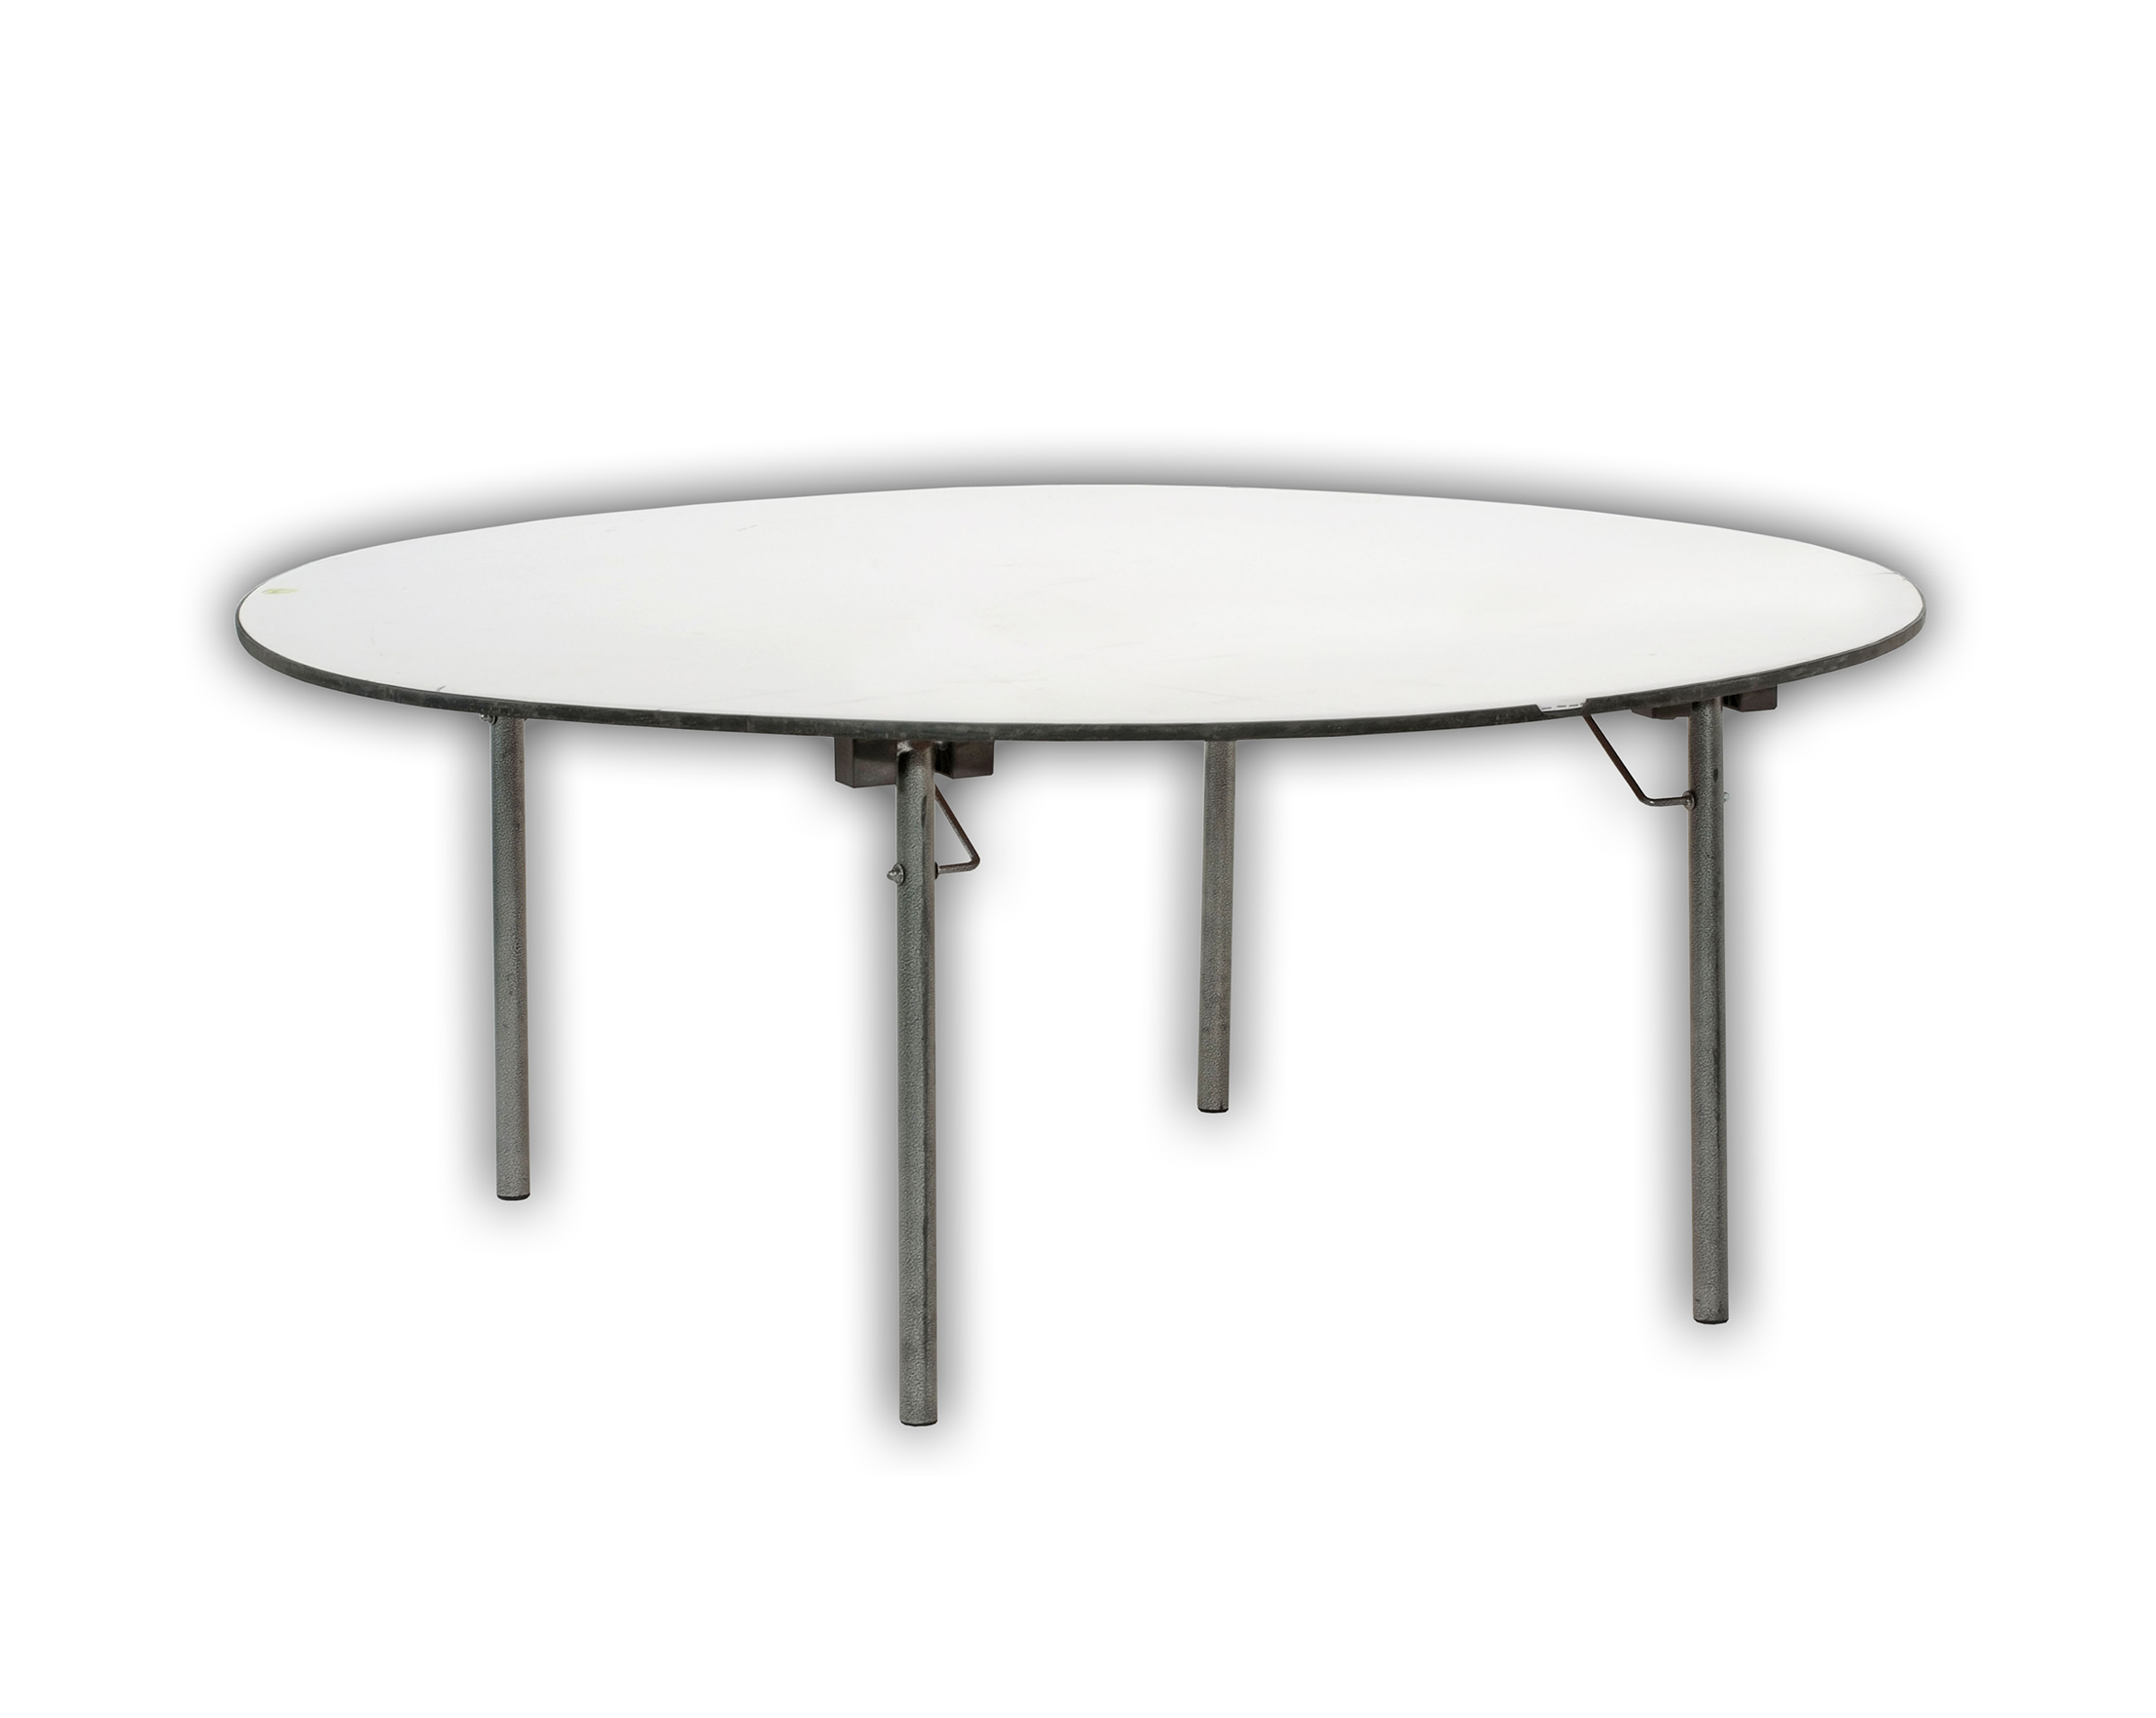 Tisch rund 180 cm - Robert Meyer Catering GmbH